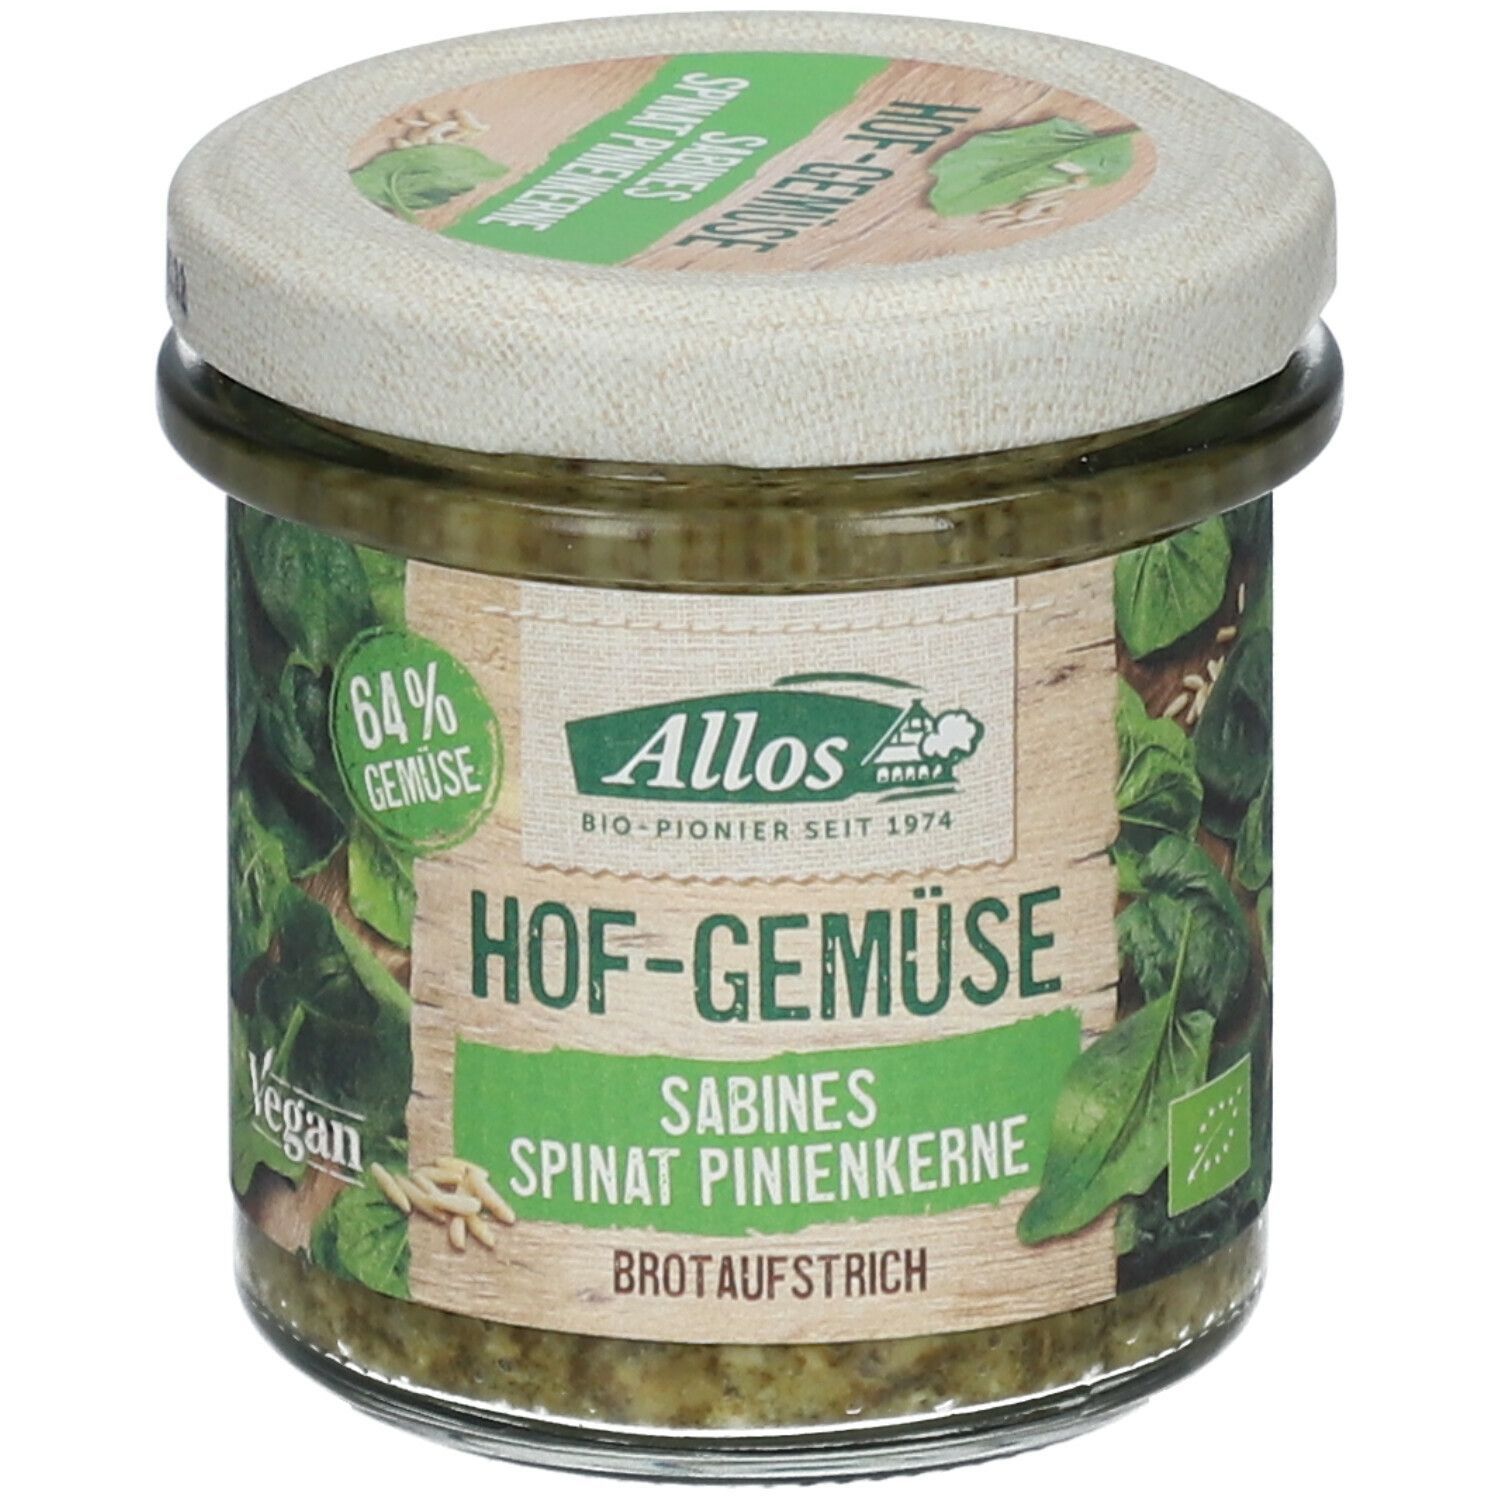 Allos Hof-Gemüse Sabines Spinat Pinienkerne Brotaufstrich